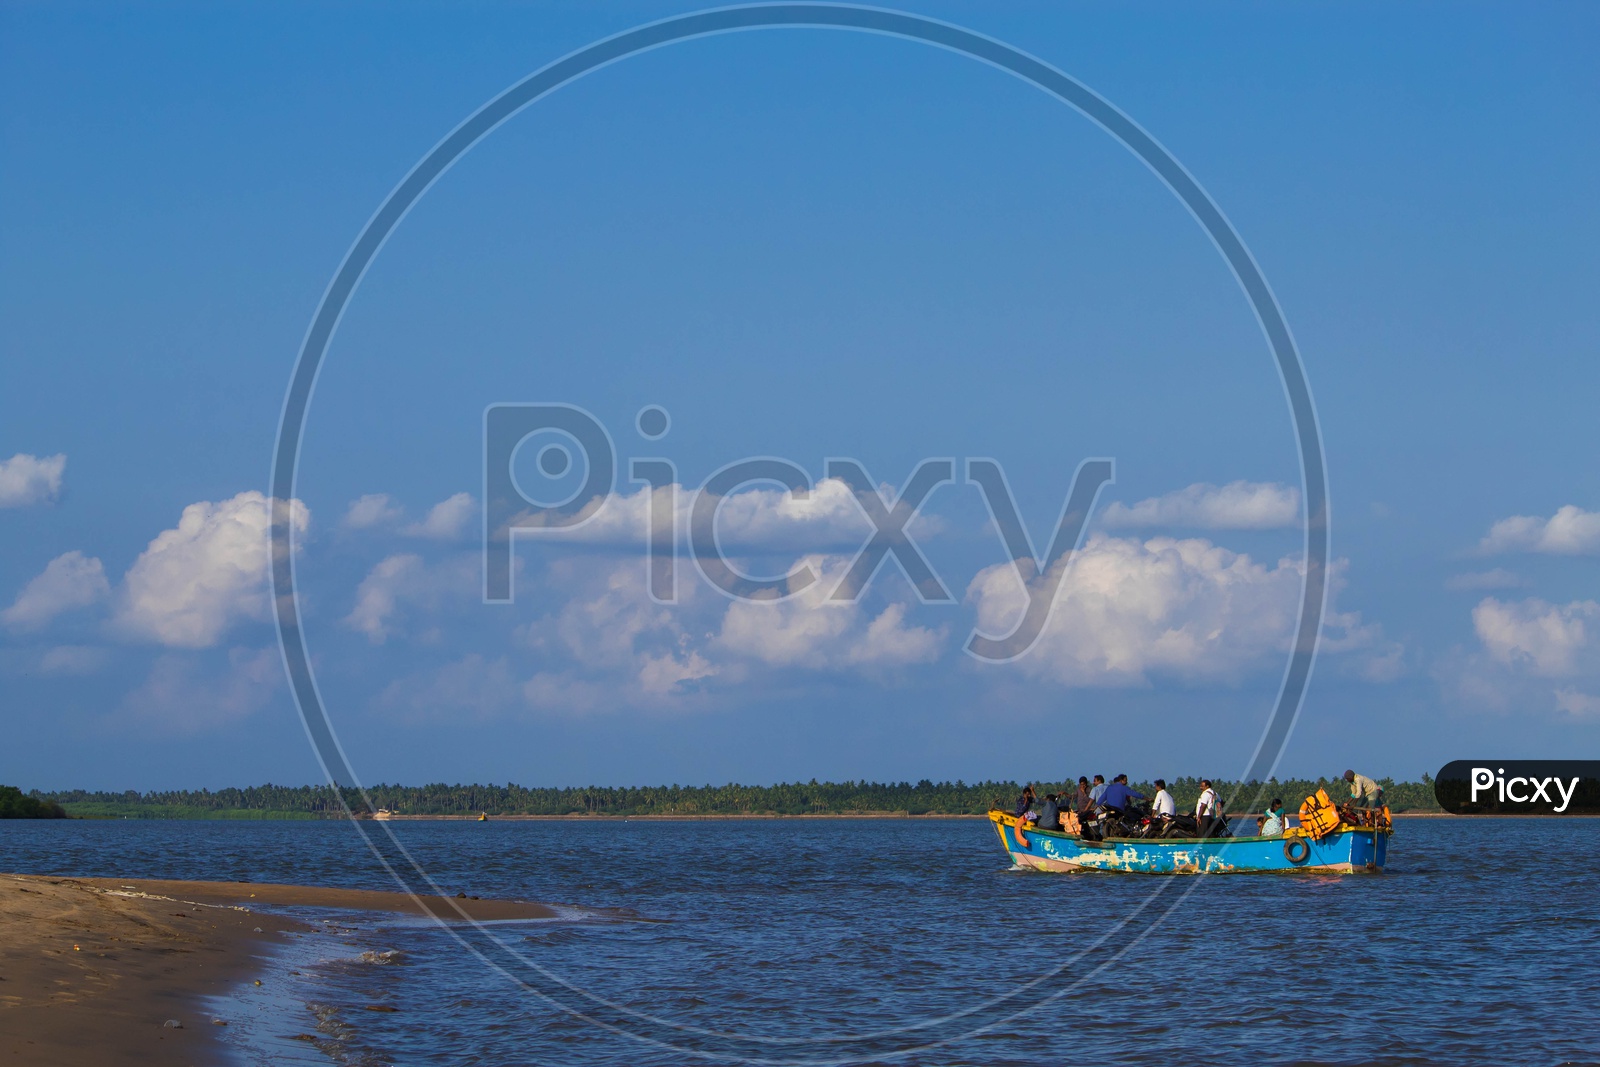 Boats in Godavari River